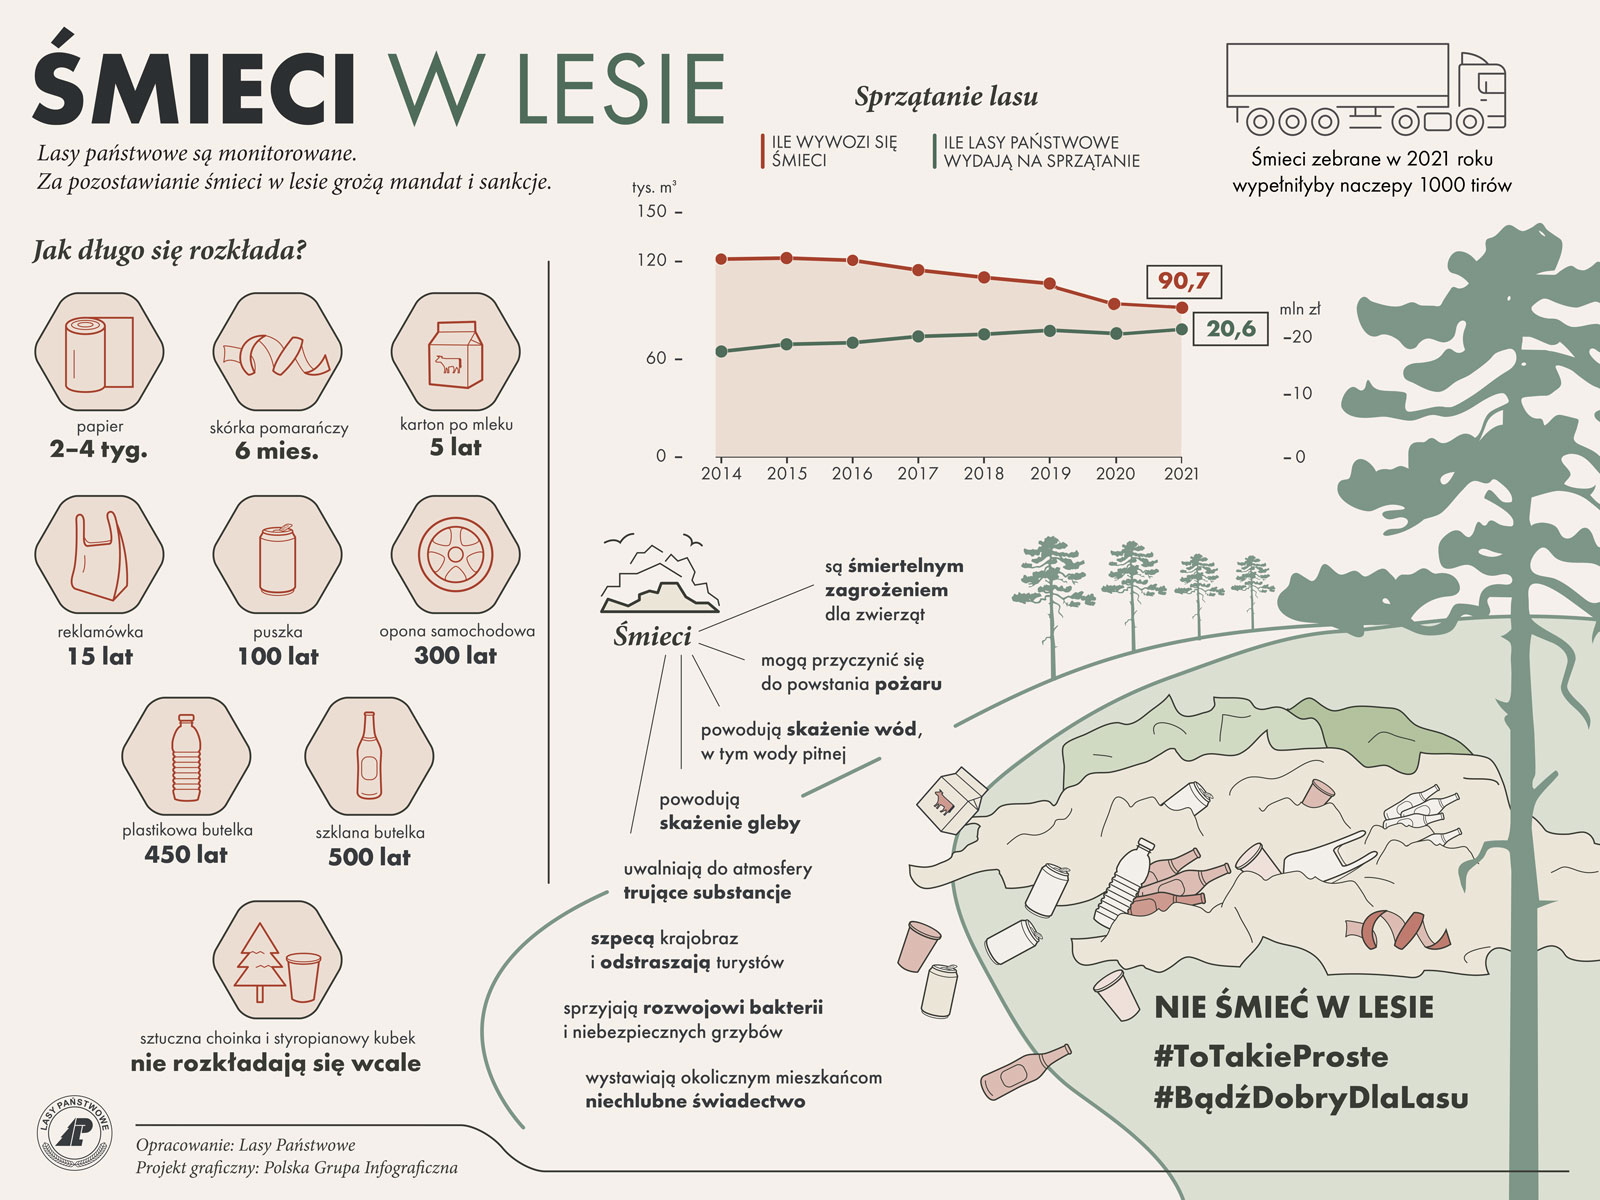 Infografika przedstawia informacje na temat śmieci w lesie.